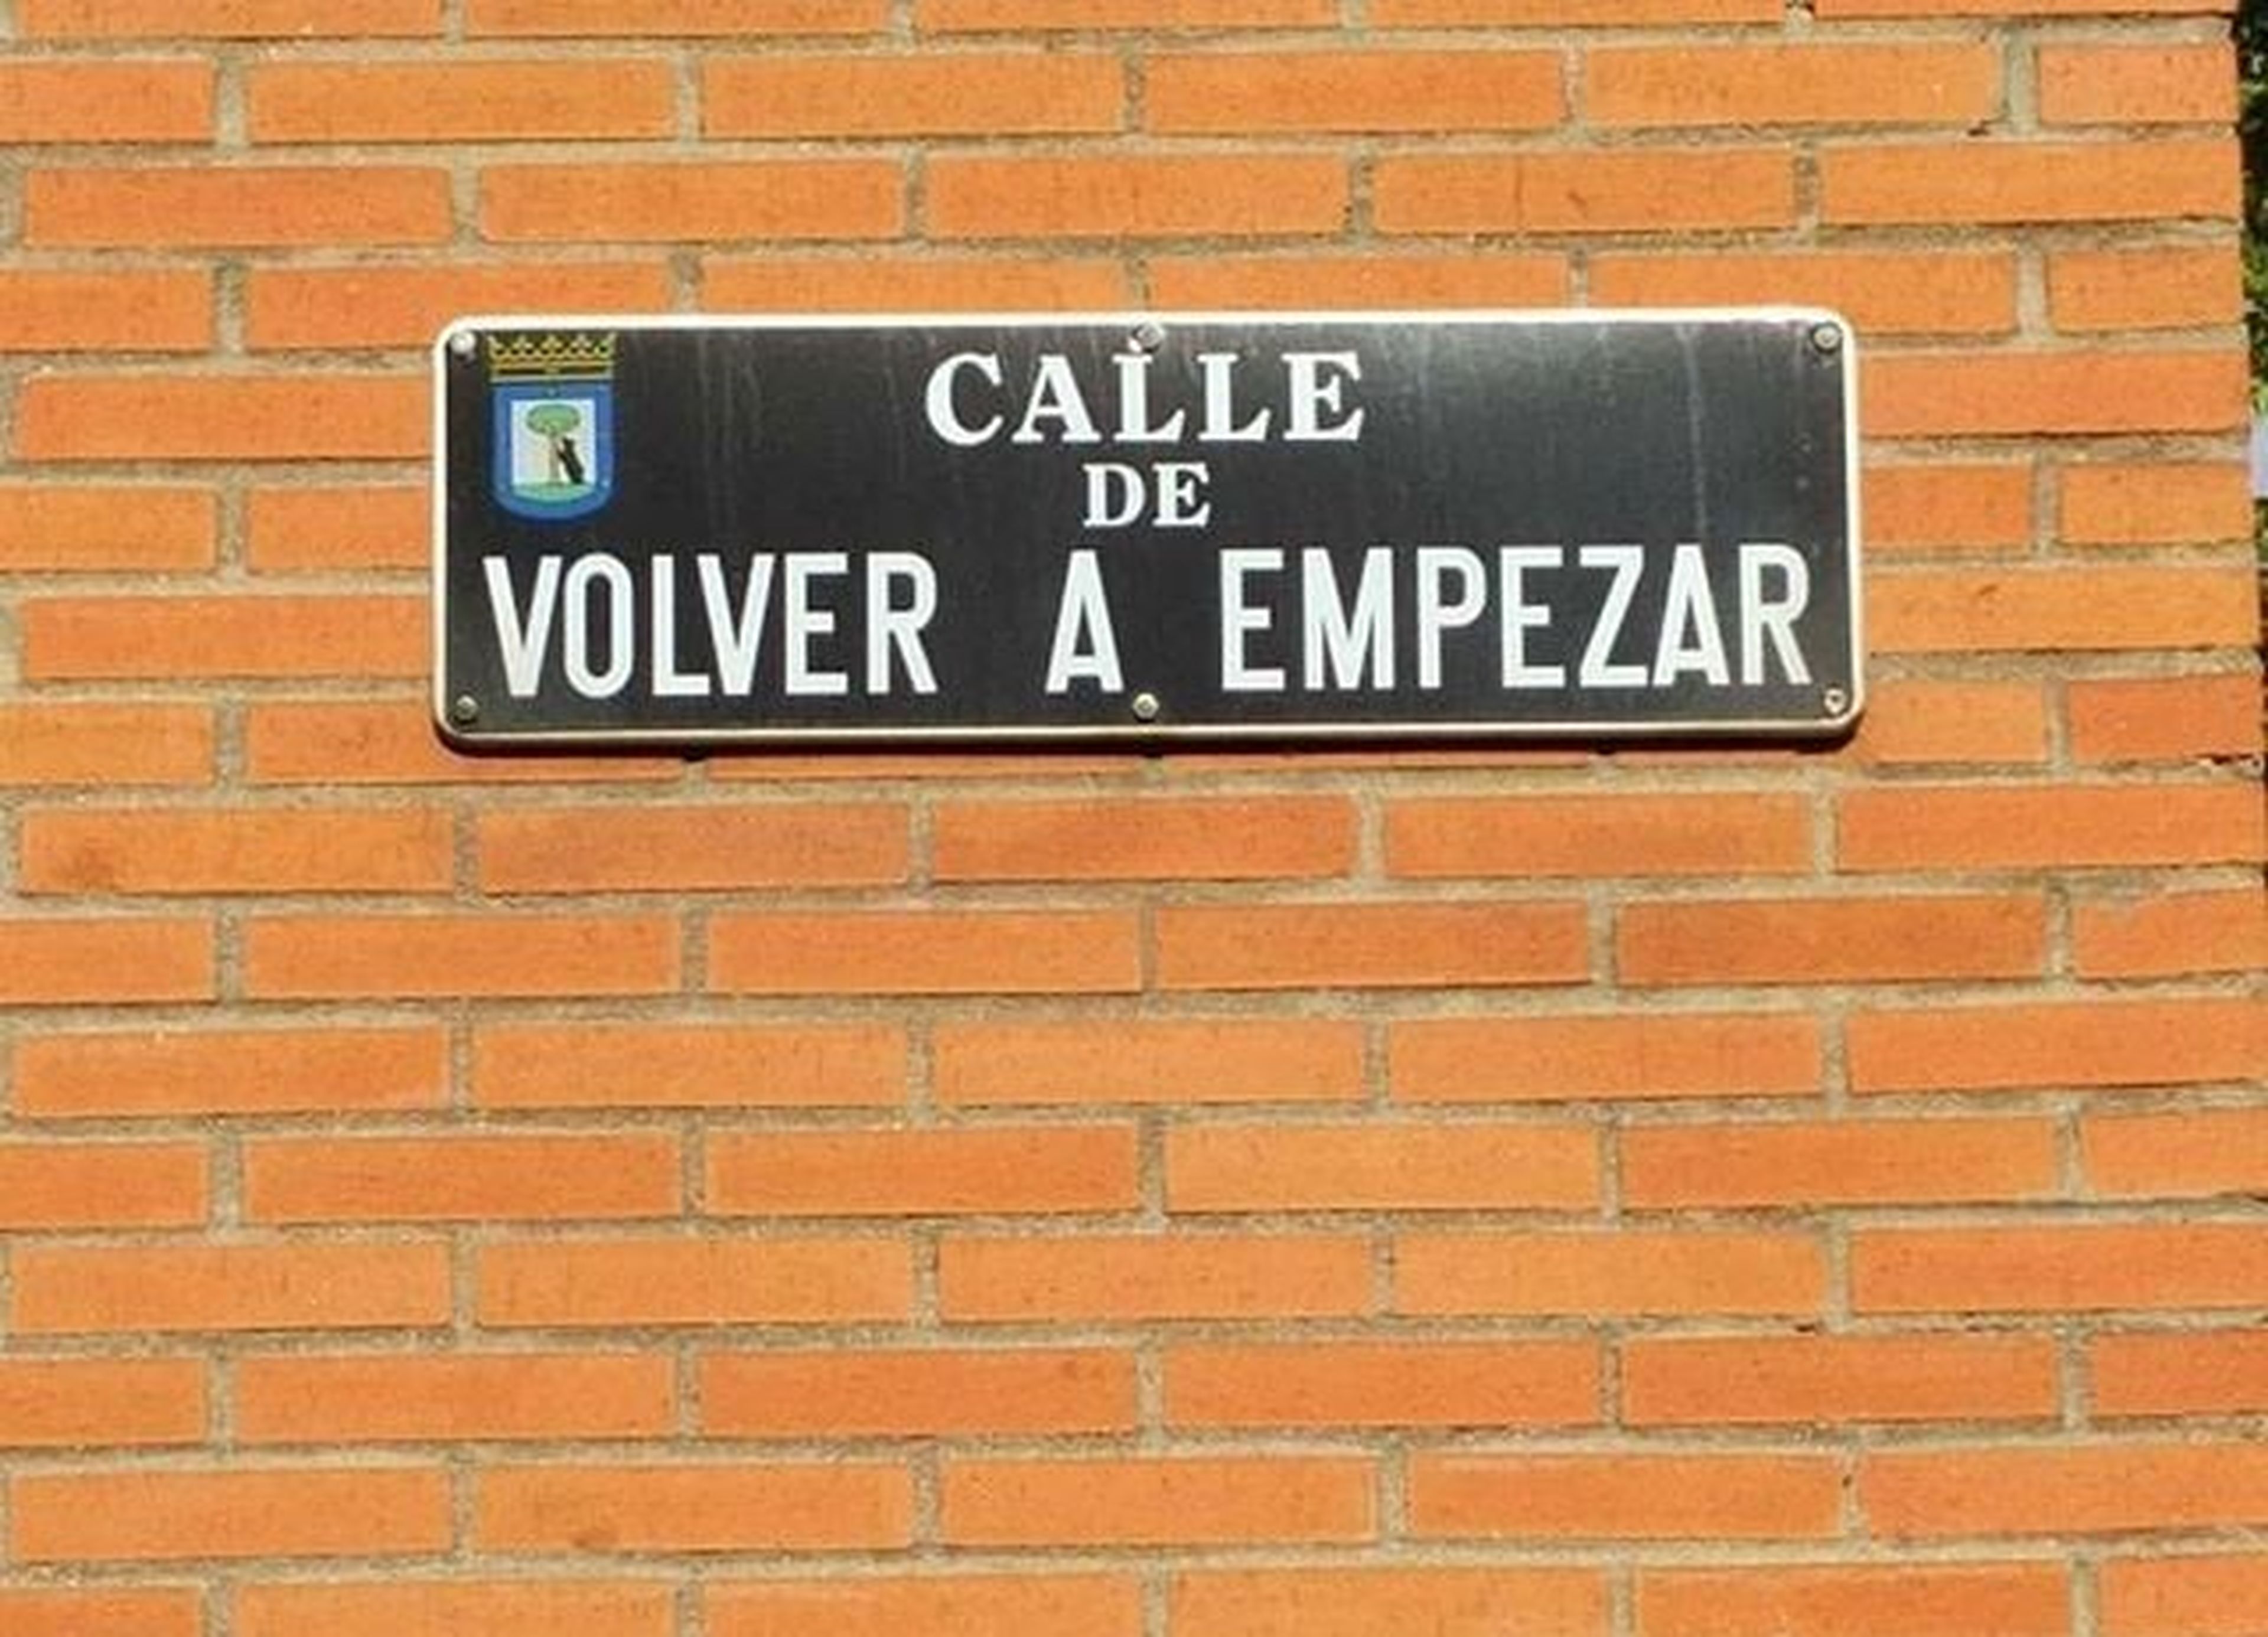 Calle Volver a empezar, Vallecas, Madrid.